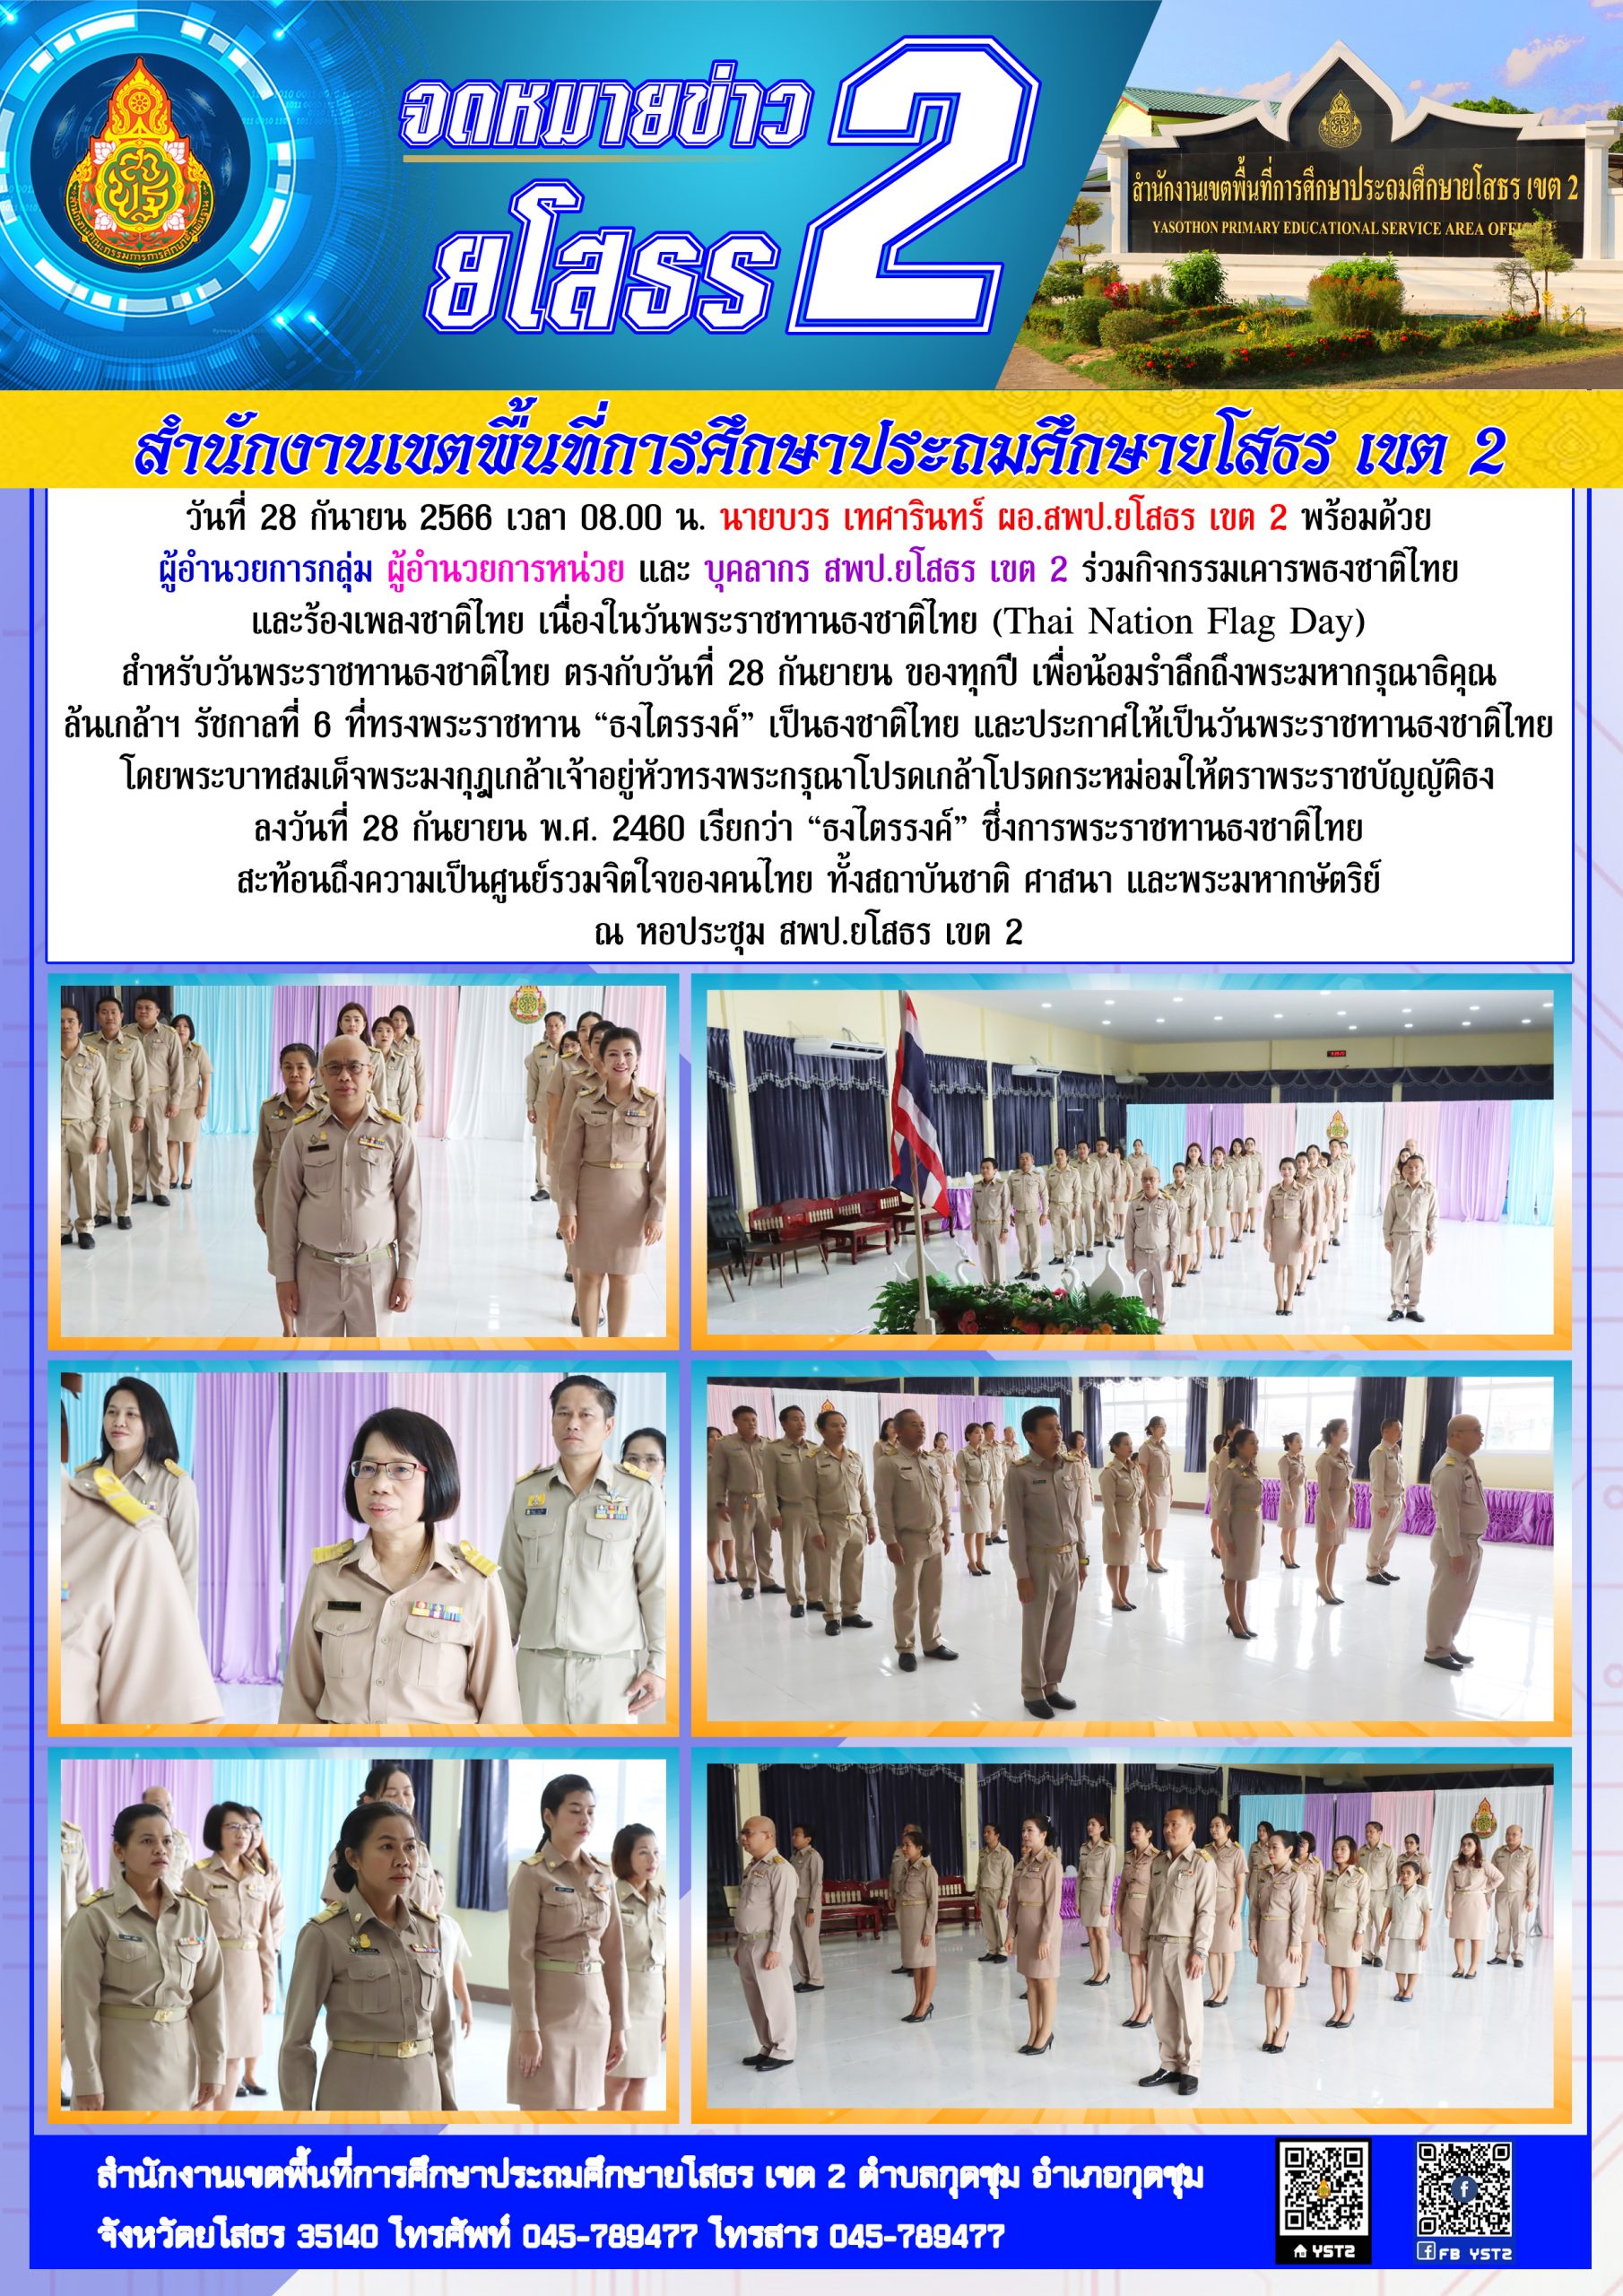 สพป.ยโสธร เขต 2 จัดกิจกรรมเคารพธงชาติไทยและร้องเพลงชาติไทย เนื่องในวันพระราชทานธงชาติไทย (Thai Nation Flag Day)